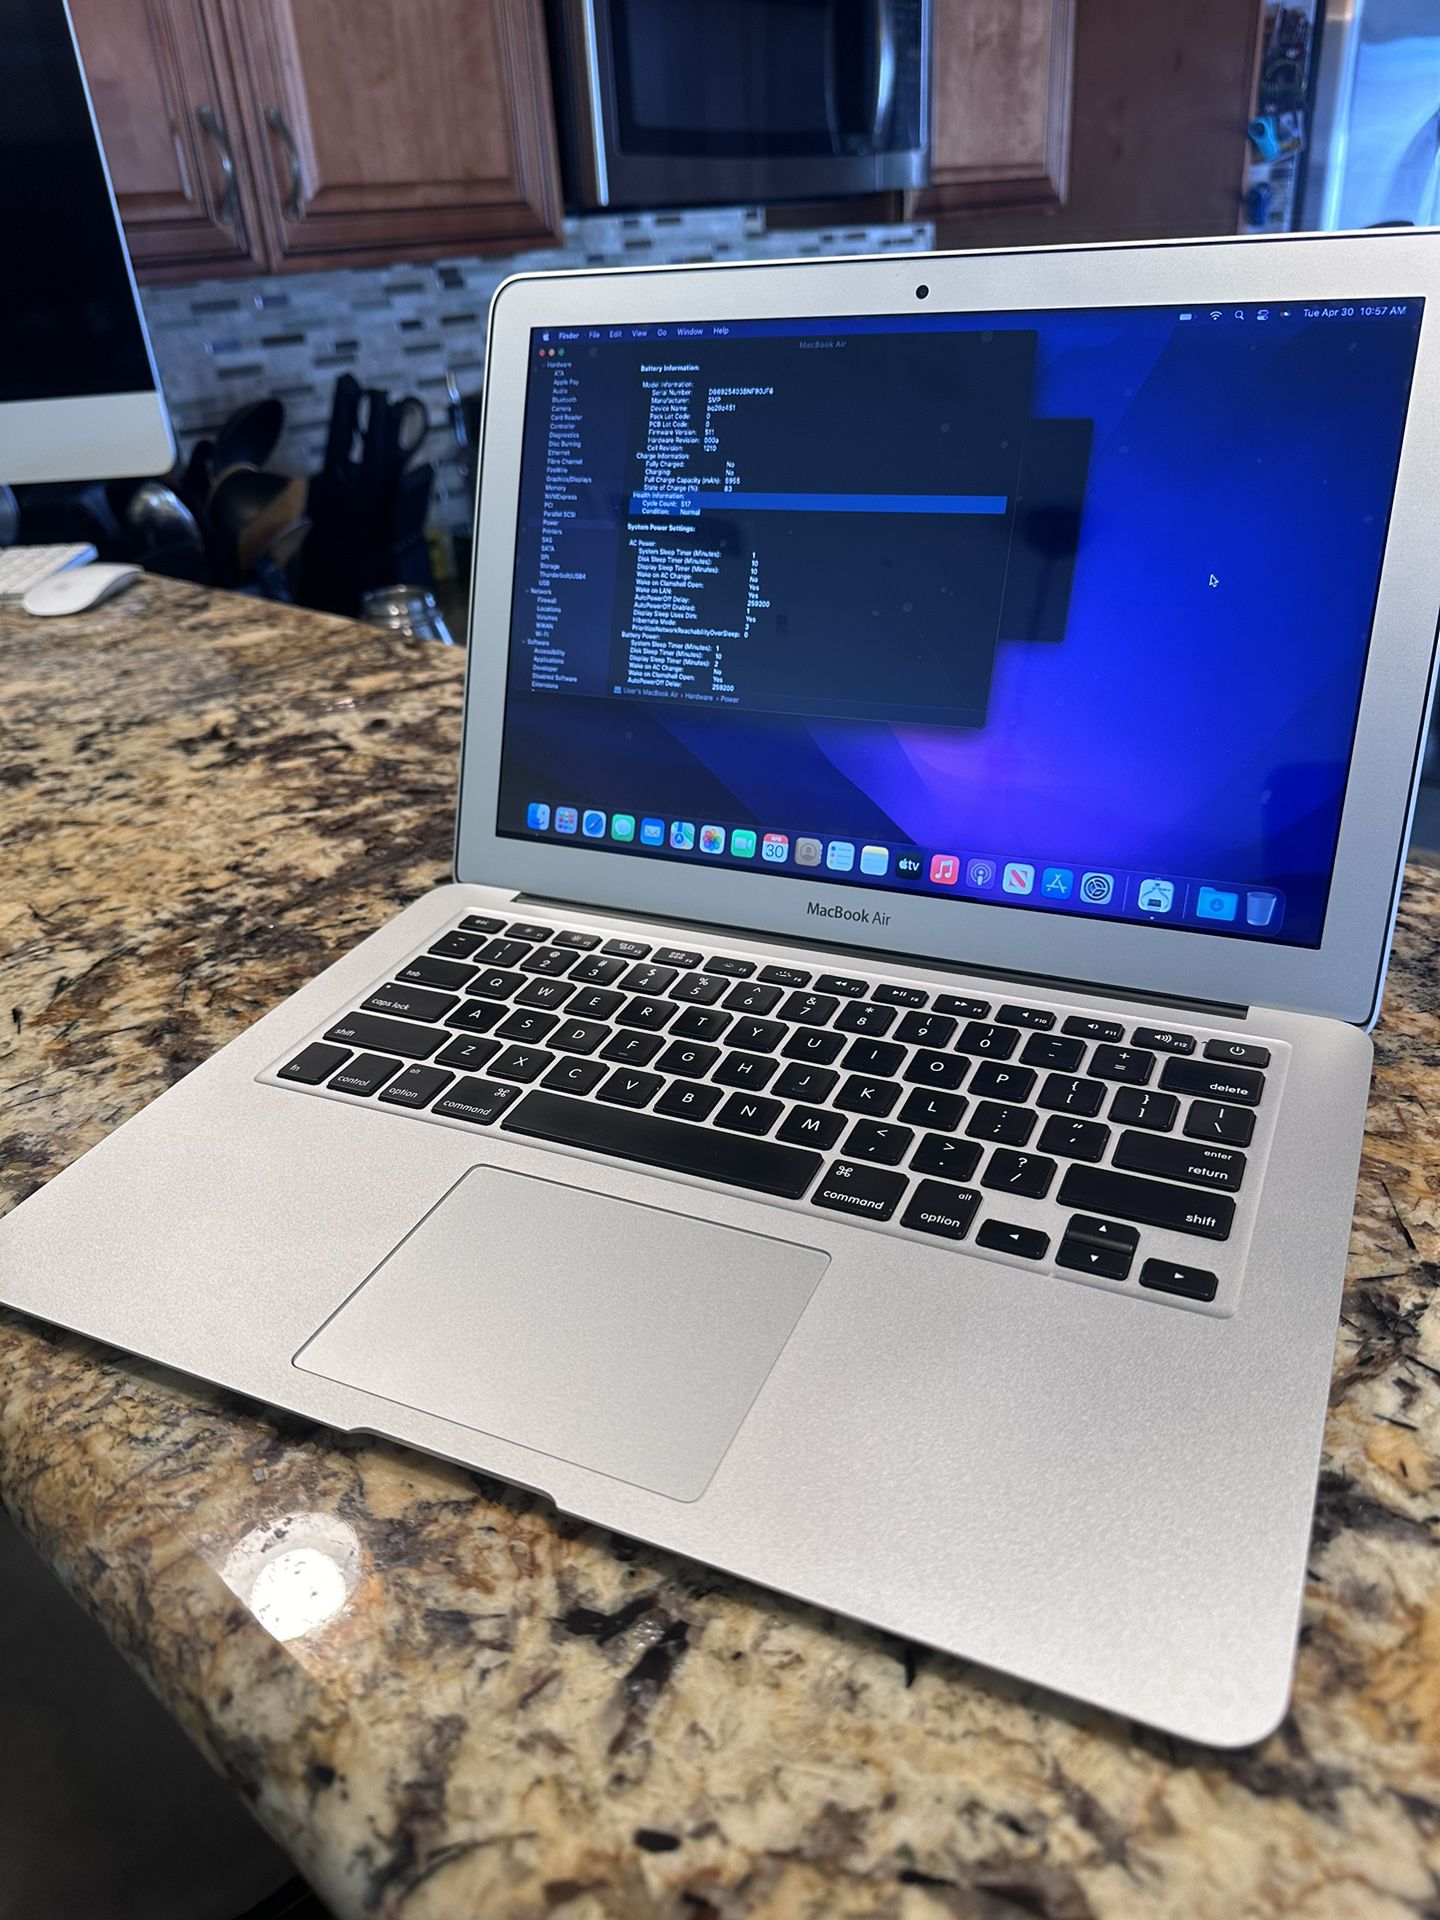 MacBook Air 2017 i5 1.8 GHz Duo Core 